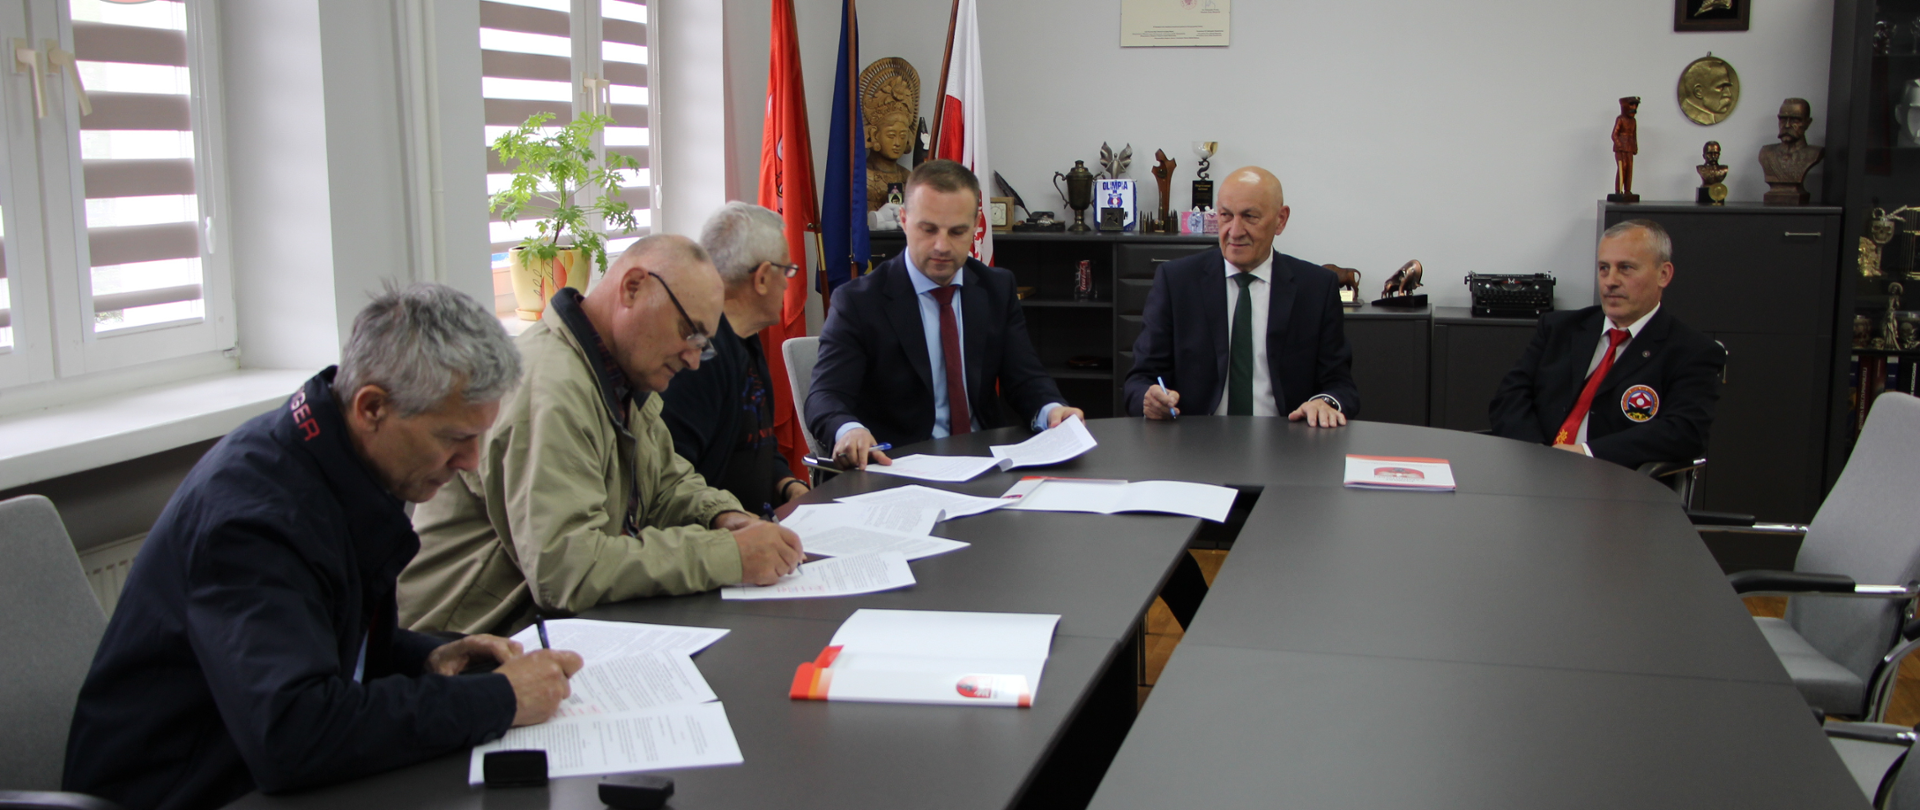 od lewej: Andrzej Zapert, Radziejewski Tadeusz, Rokicki Jan, Wicestarosta Zambrowski, Starosta Zambrowski, Artur Więzowski podpisują umowy